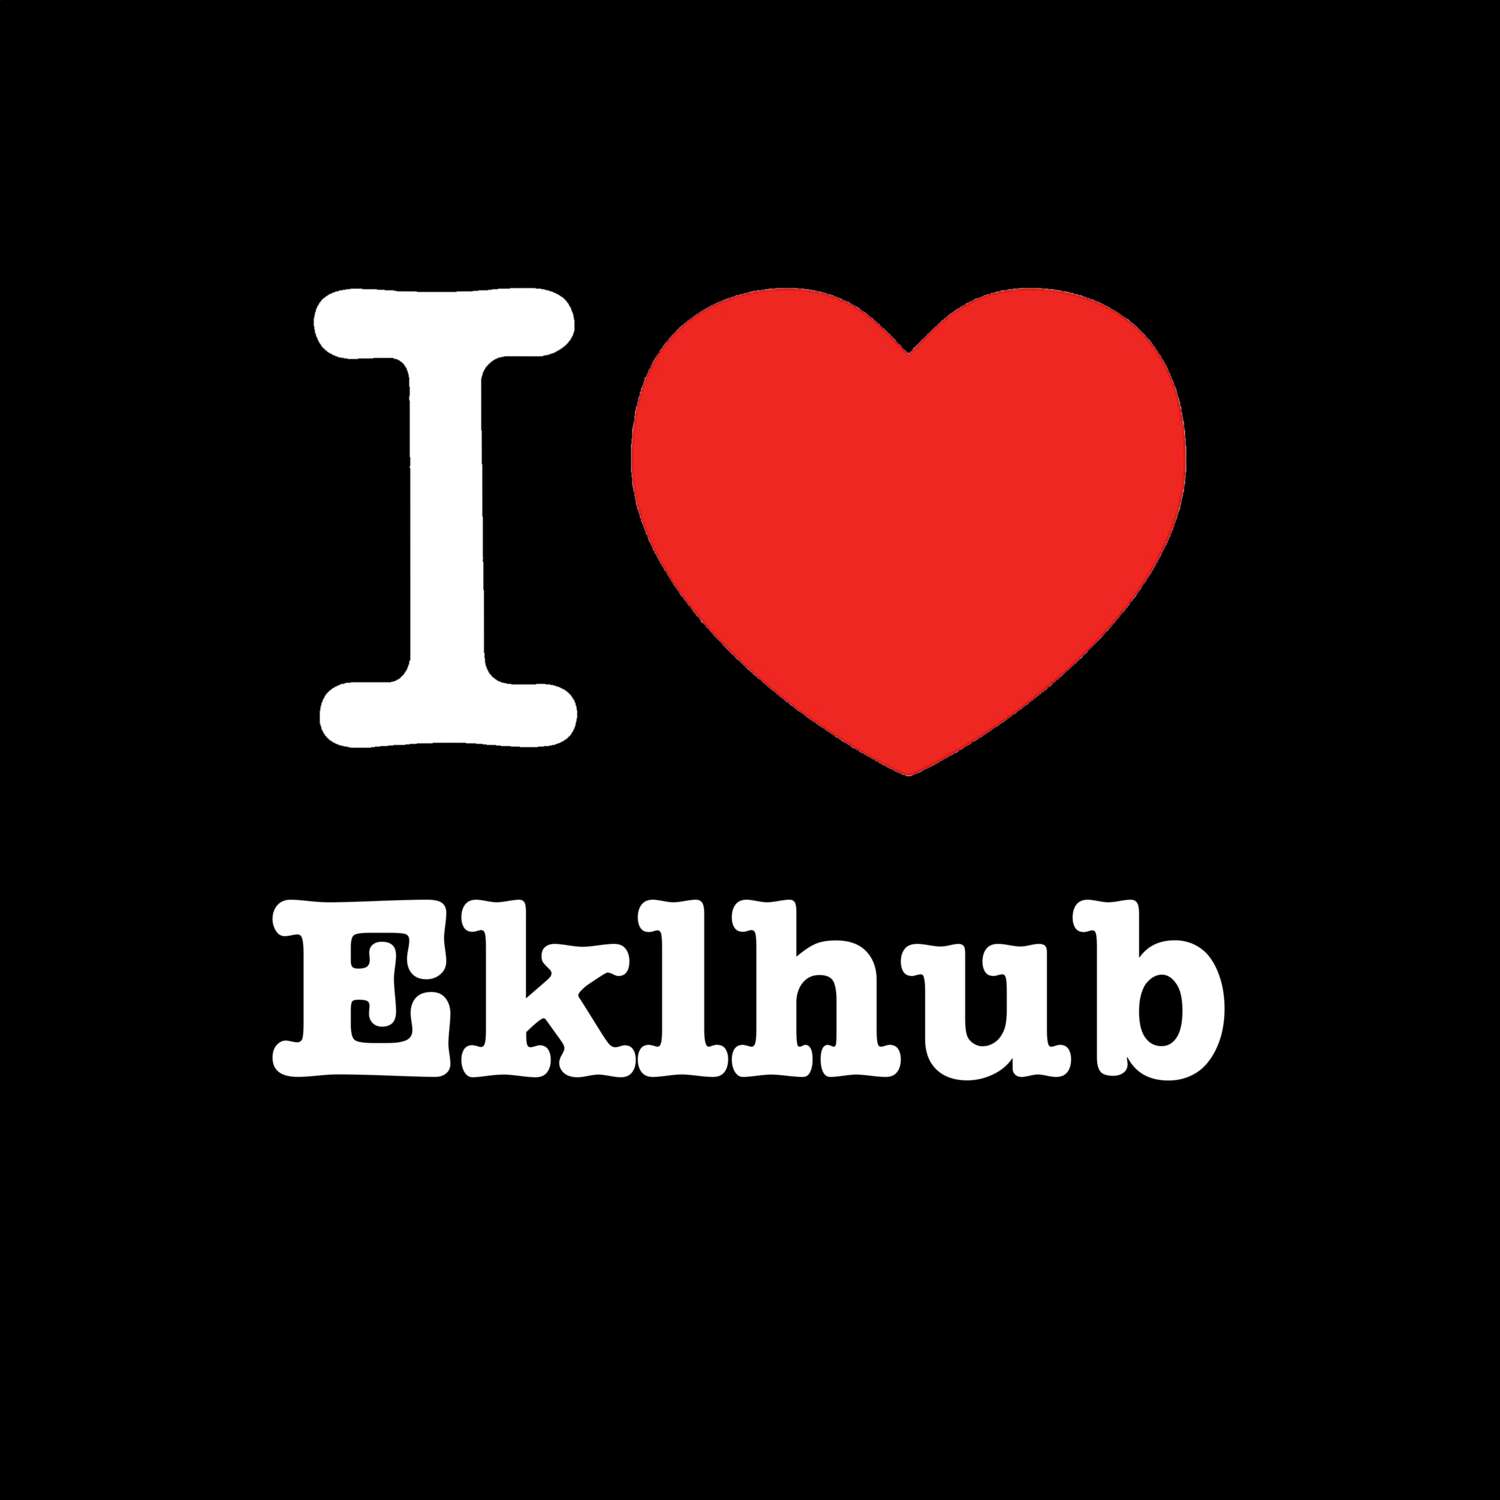 Eklhub T-Shirt »I love«